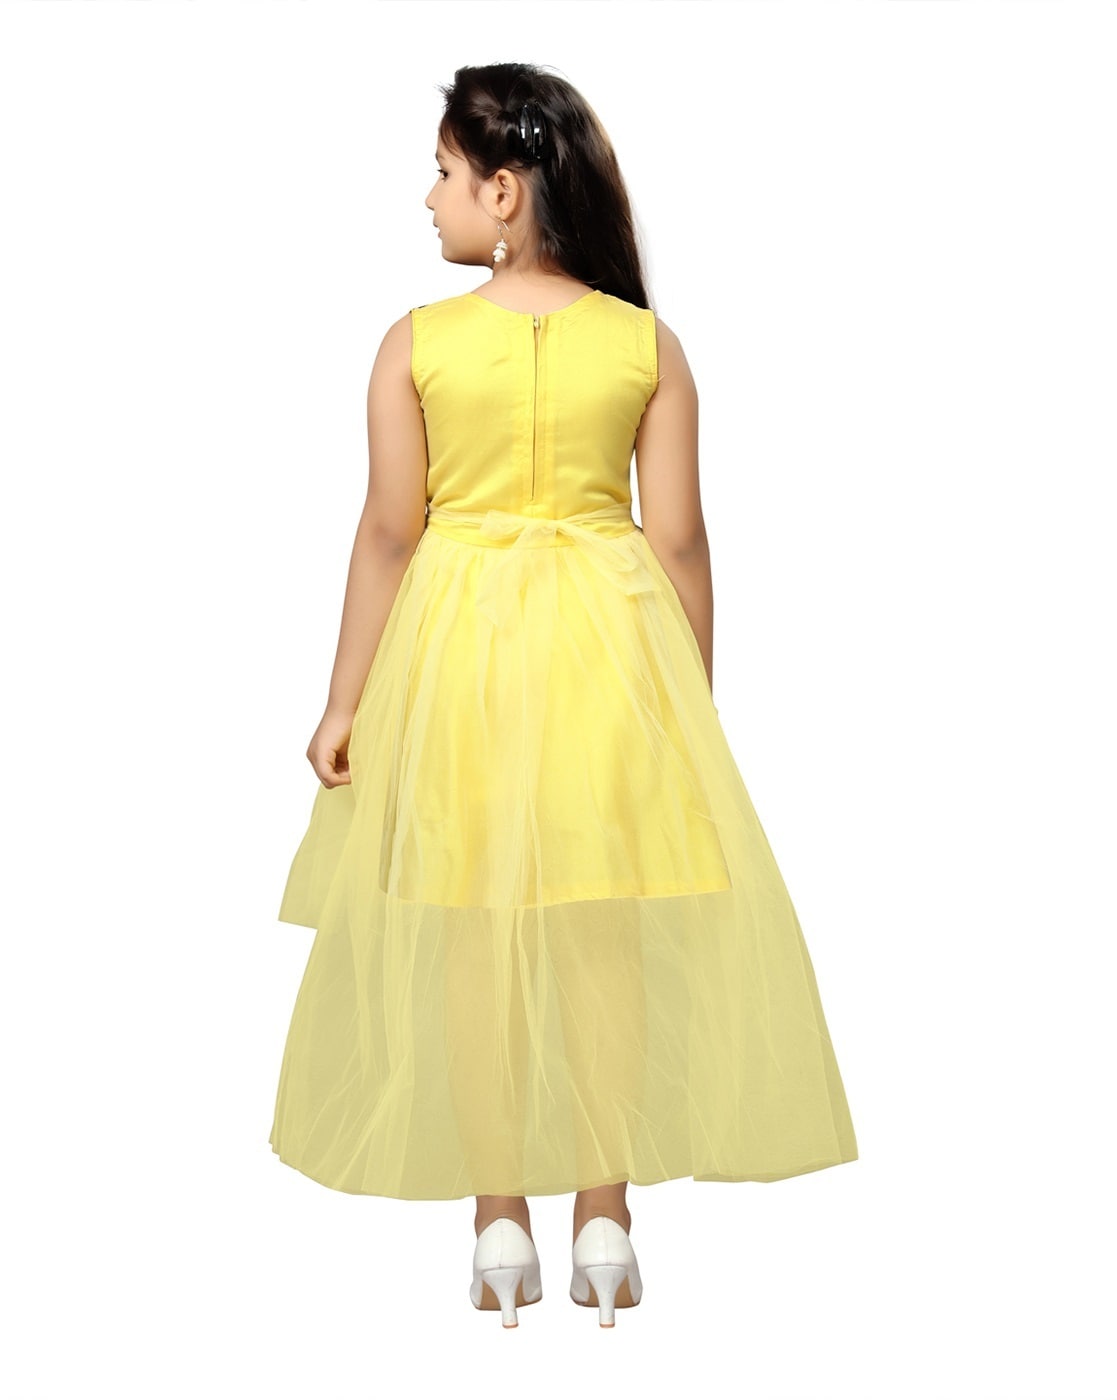 Salt girl inspired rental dress for children